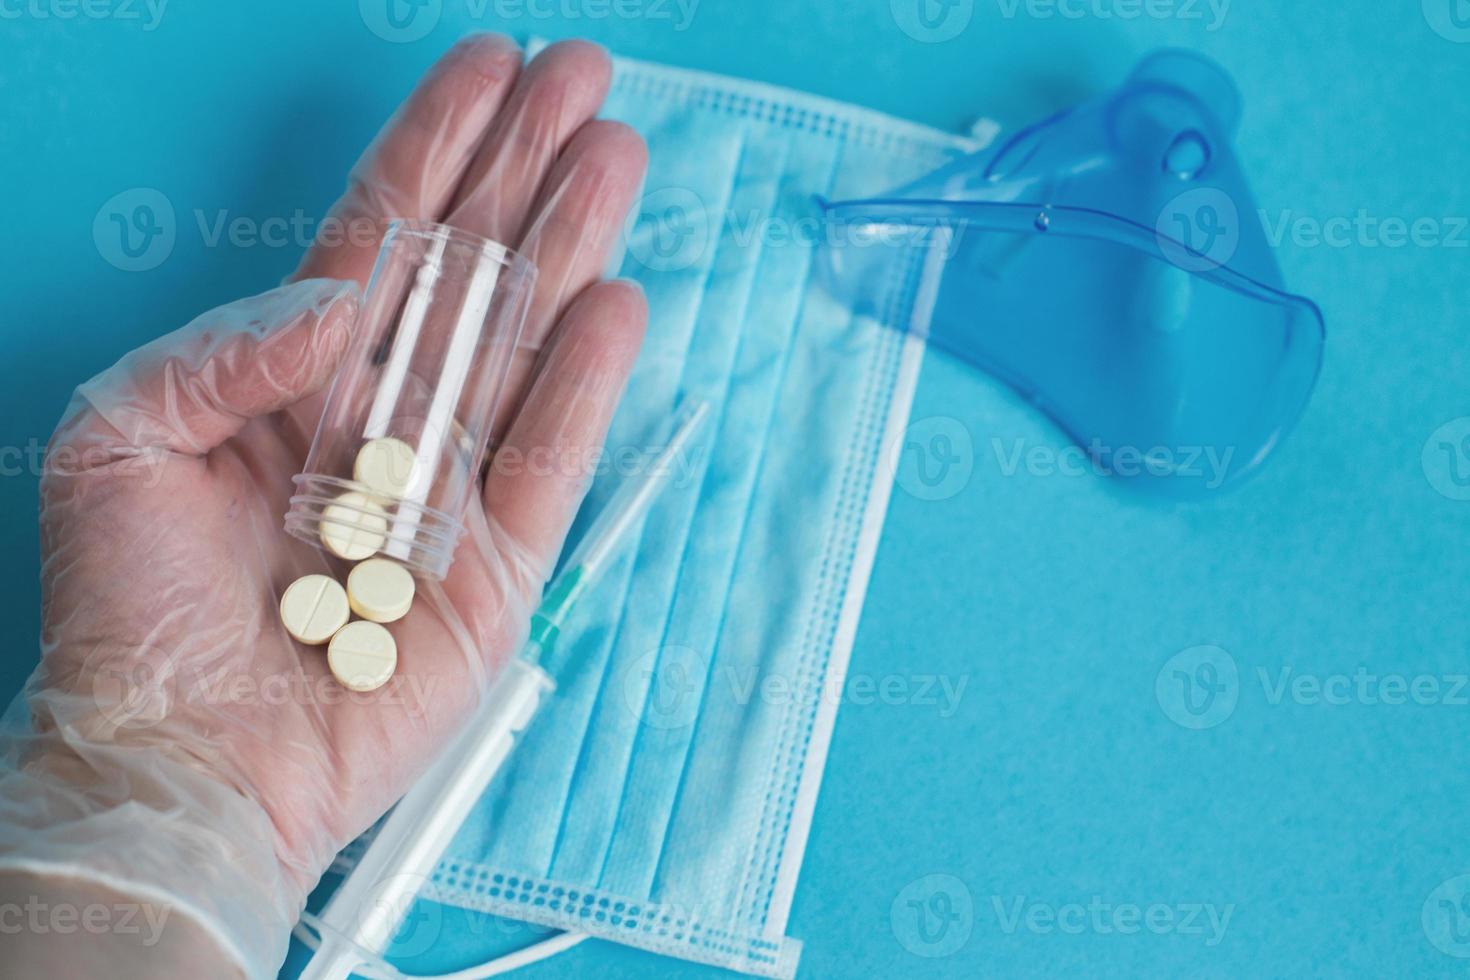 masque médical, seringue, masque pour inhalation et comprimés à proximité sur fond bleu. la main tient des pilules. coronavirus, grippe photo